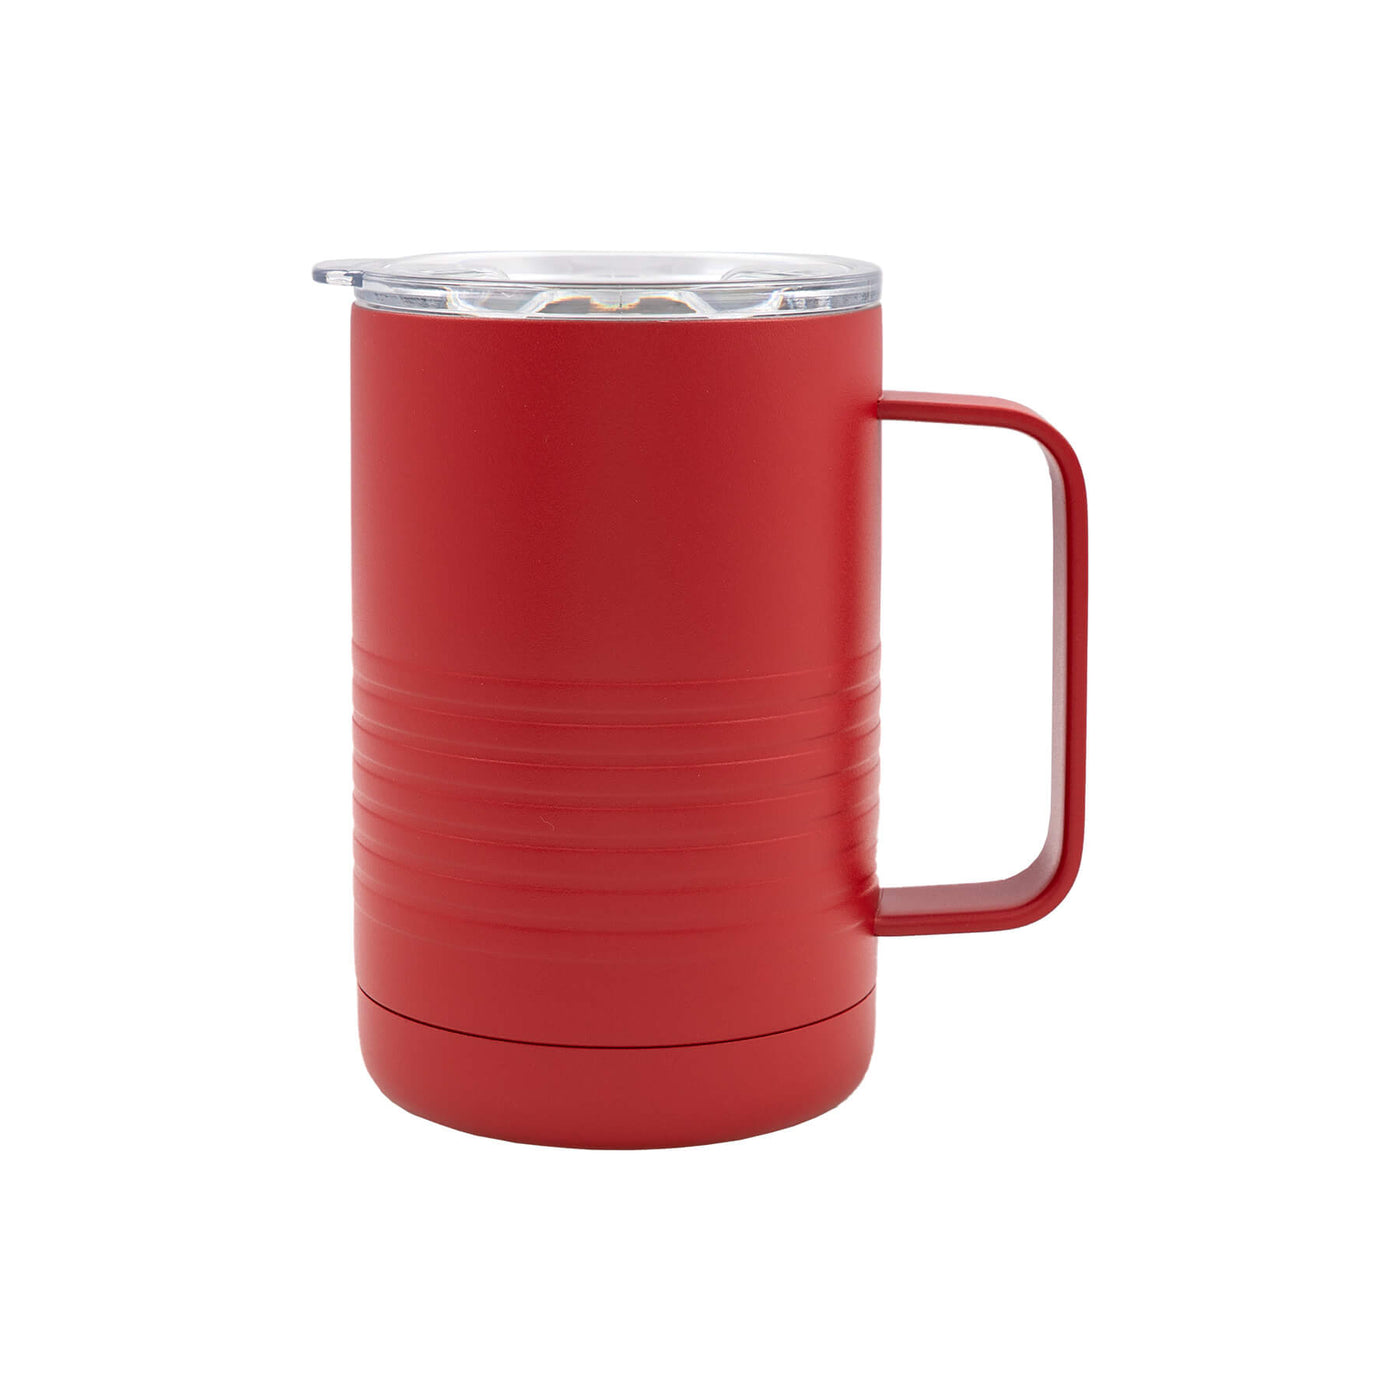 RTIC 16 oz Coffee Travel Mug with Lid and Handle